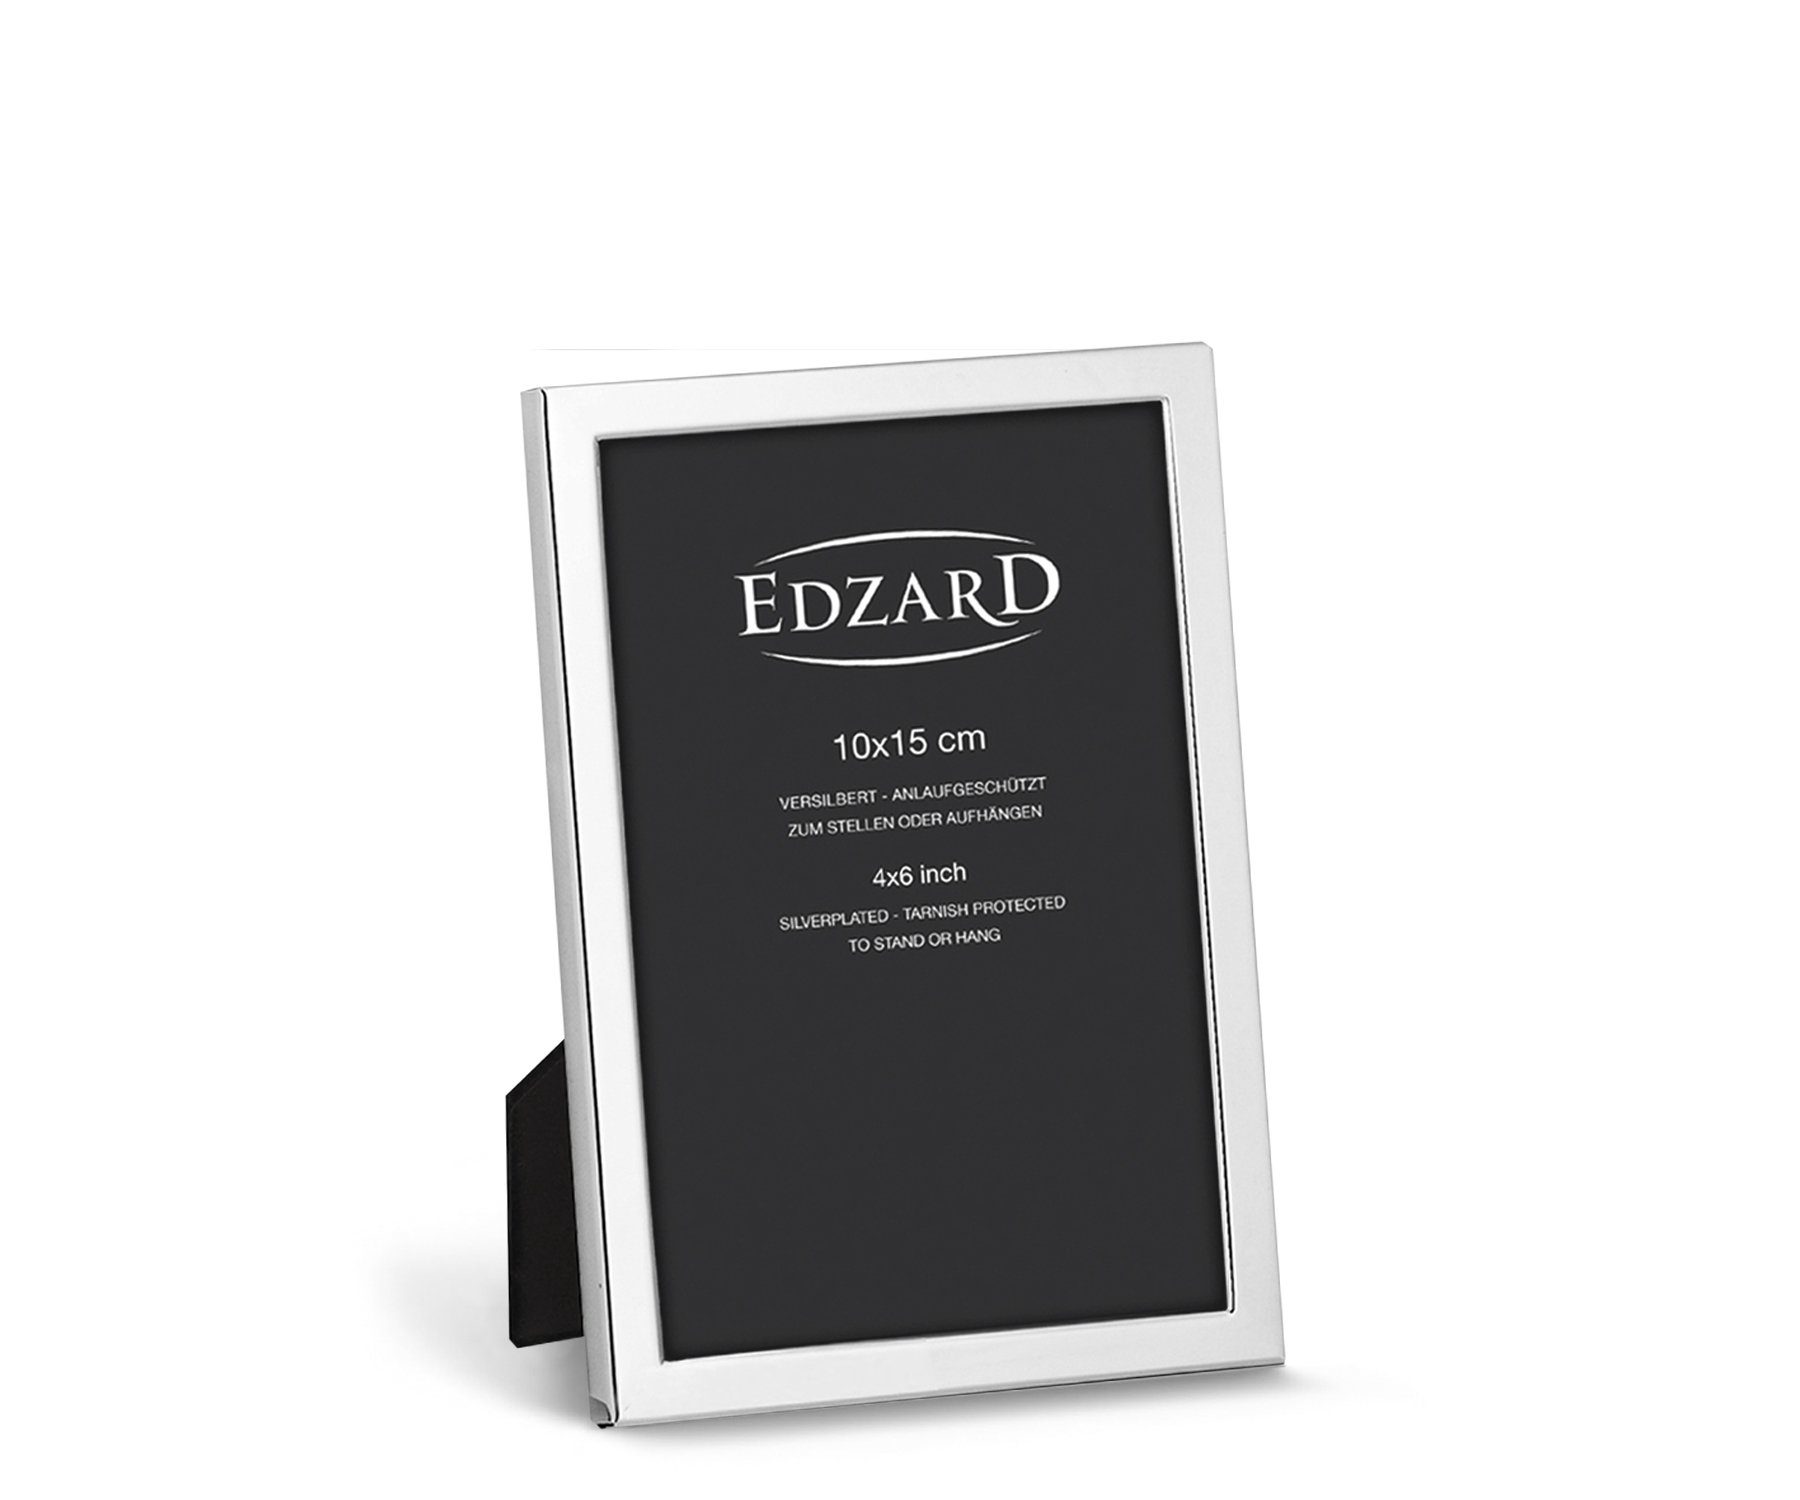 EDZARD Bilderrahmen Bergamo, versilbert und anlaufgeschützt, für 10x15 cm Foto